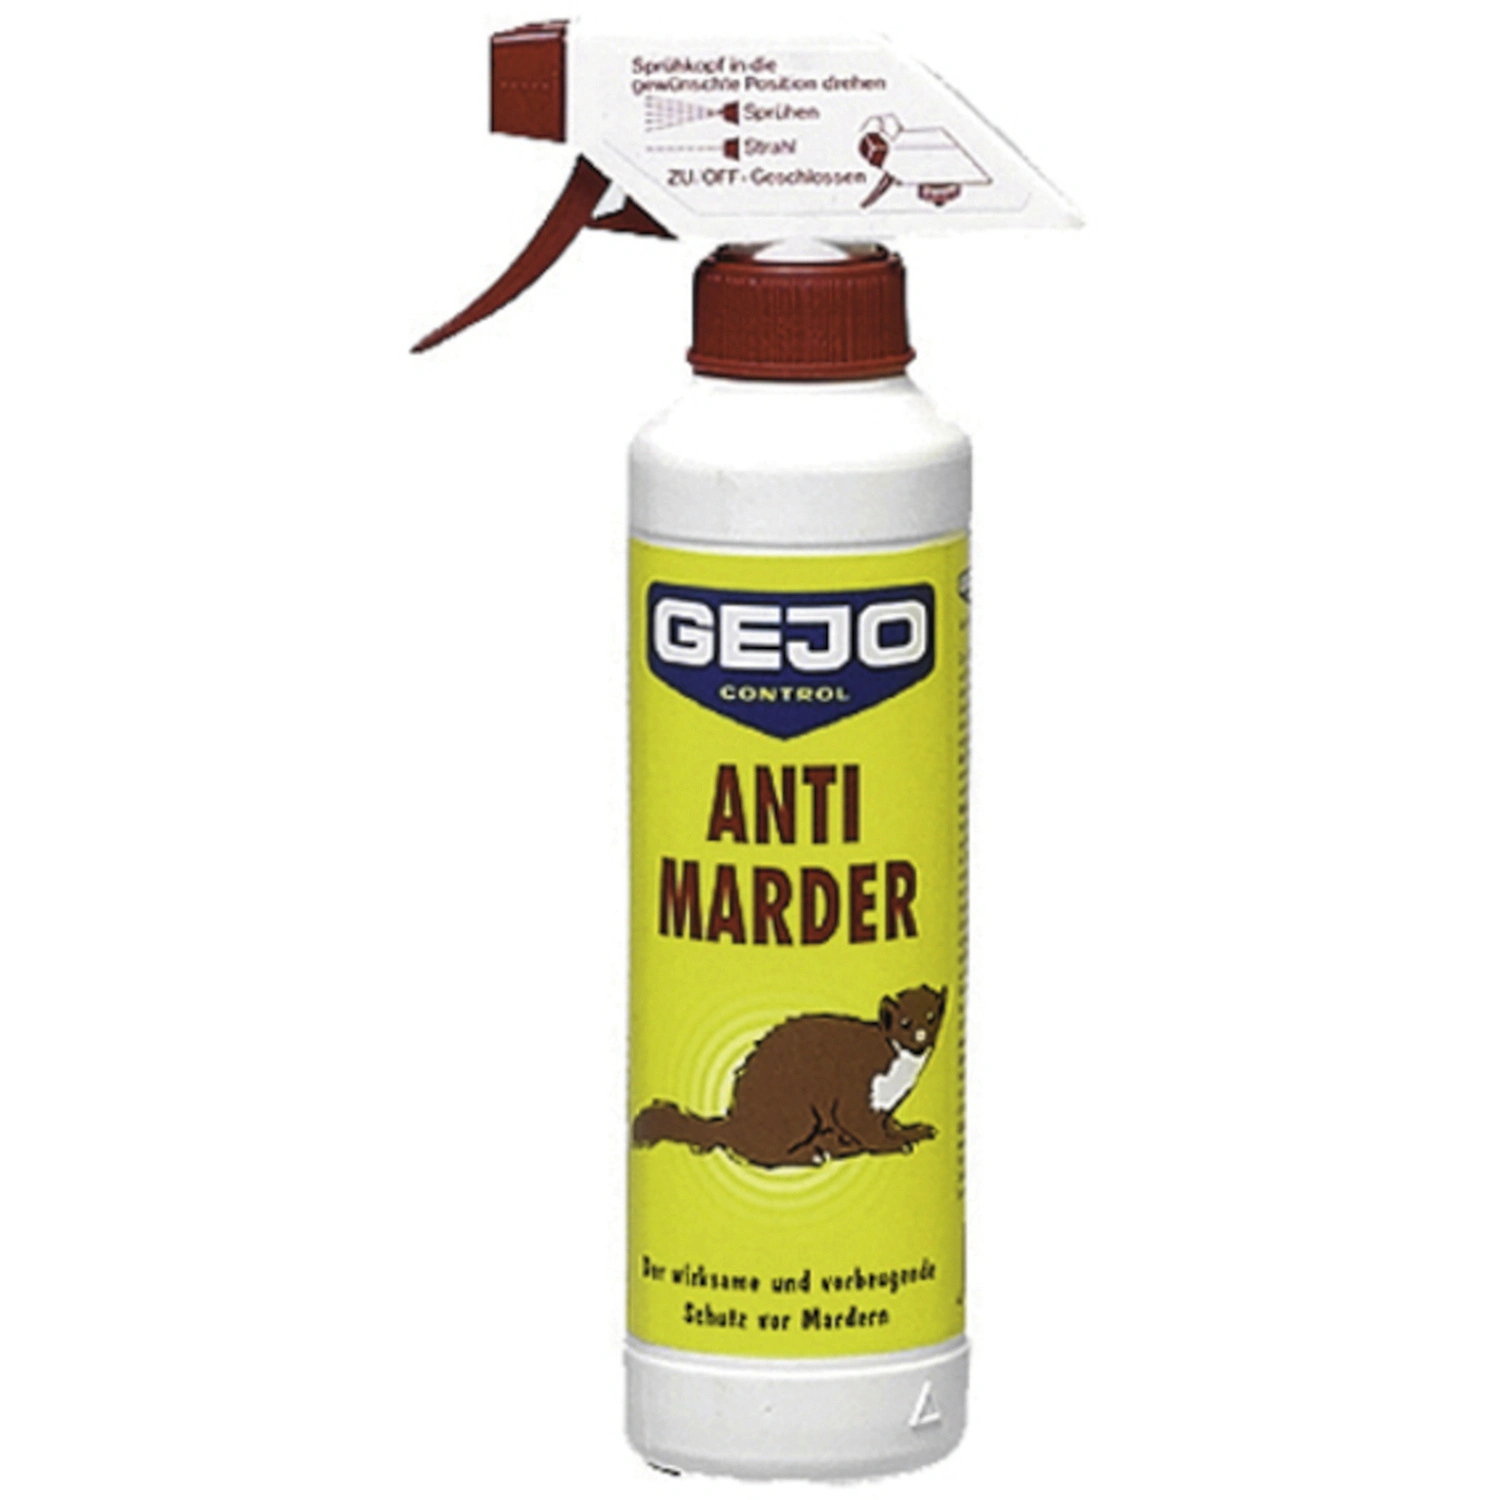 Antimarder 1x 400ml Marderstop Anti Marder Spray Marderschutz